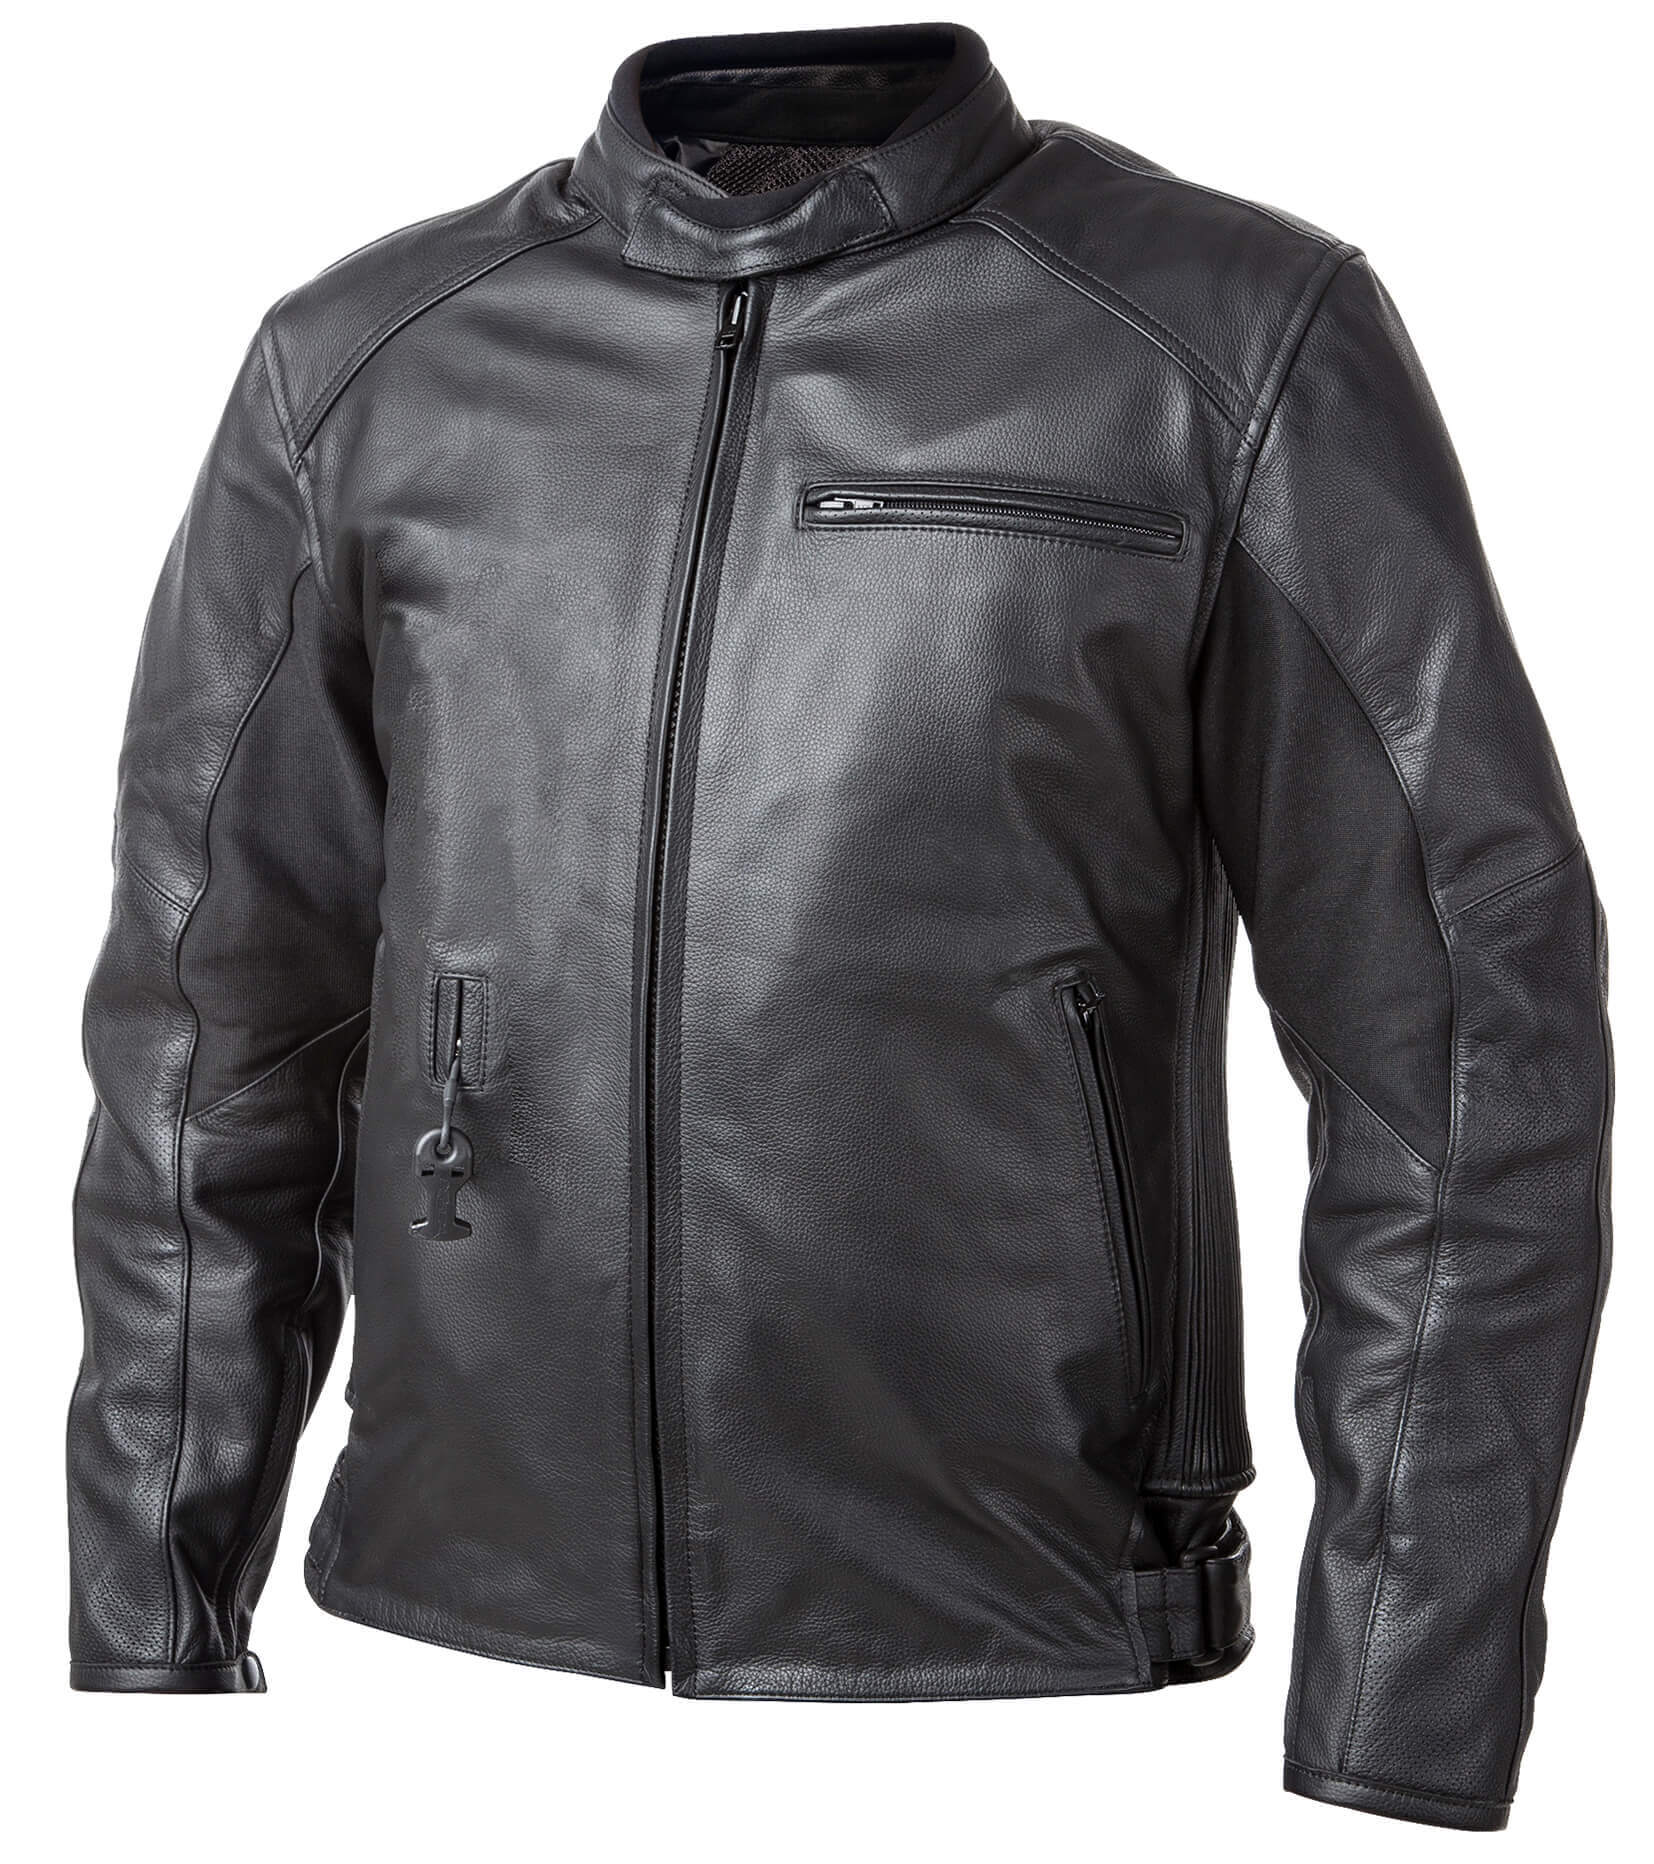 Airbag kabát Helite Roadster Vintage fekete bőr  M  Fekete